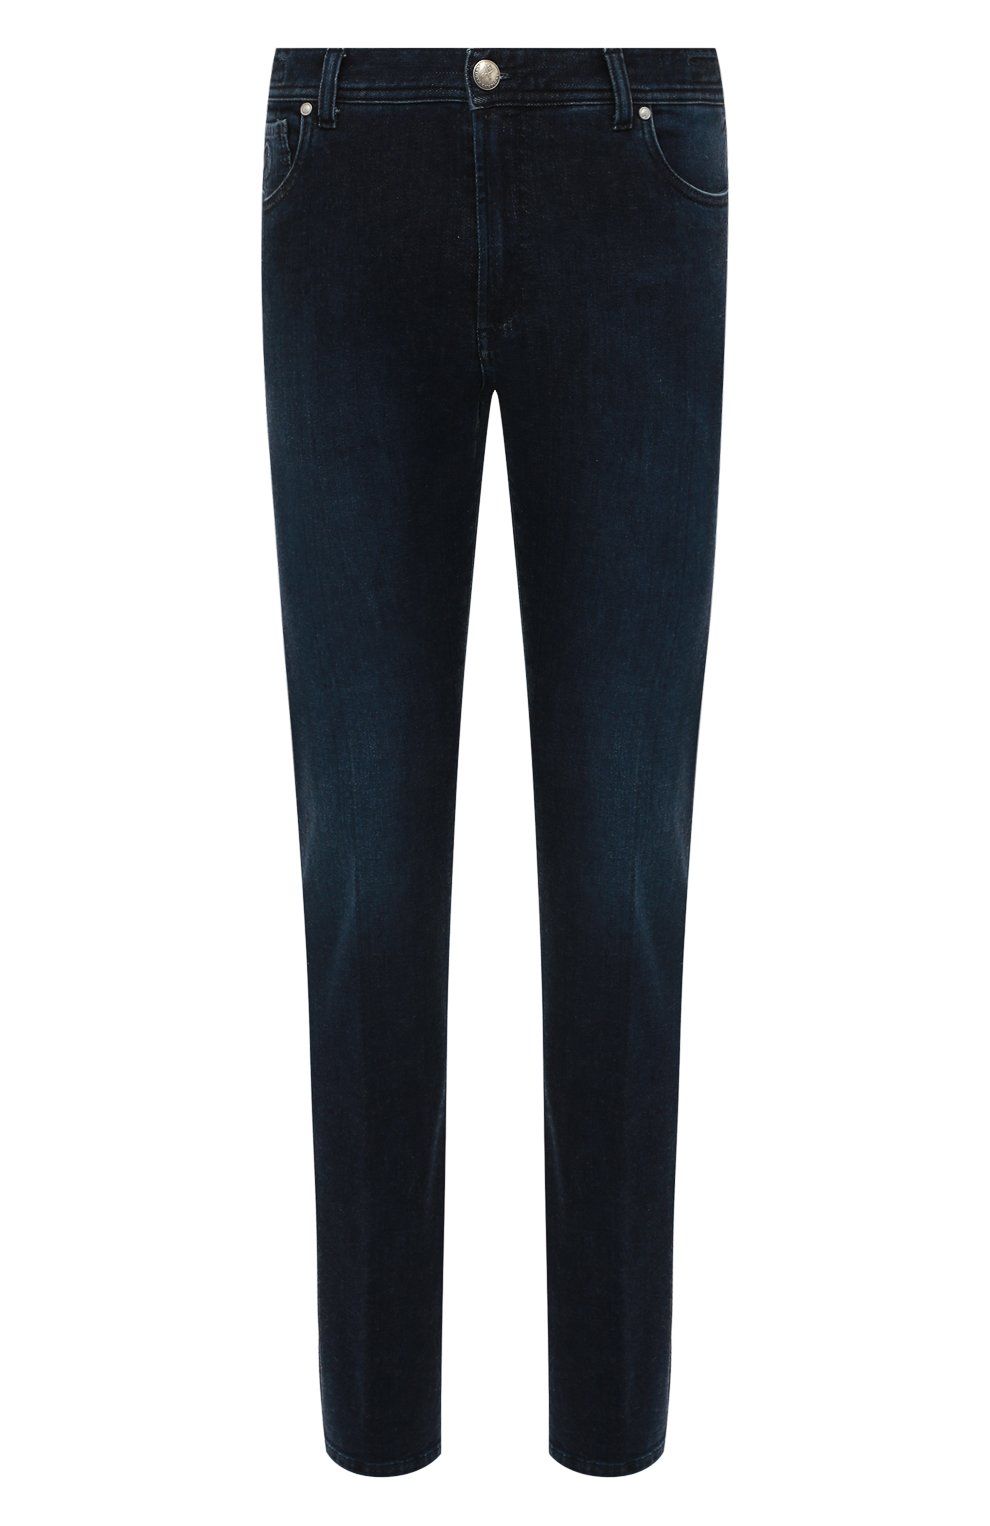 Мужские джинсы ANDREA CAMPAGNA темно-синего цвета, арт. AC501/T201.W549 | Фото 1 (Силуэт М (брюки): Прямые; Кросс-КТ: Деним; Длина (брюки, джинсы): Стандартные; Материал внешний: Хлопок, Деним; Стили: Кэжуэл)